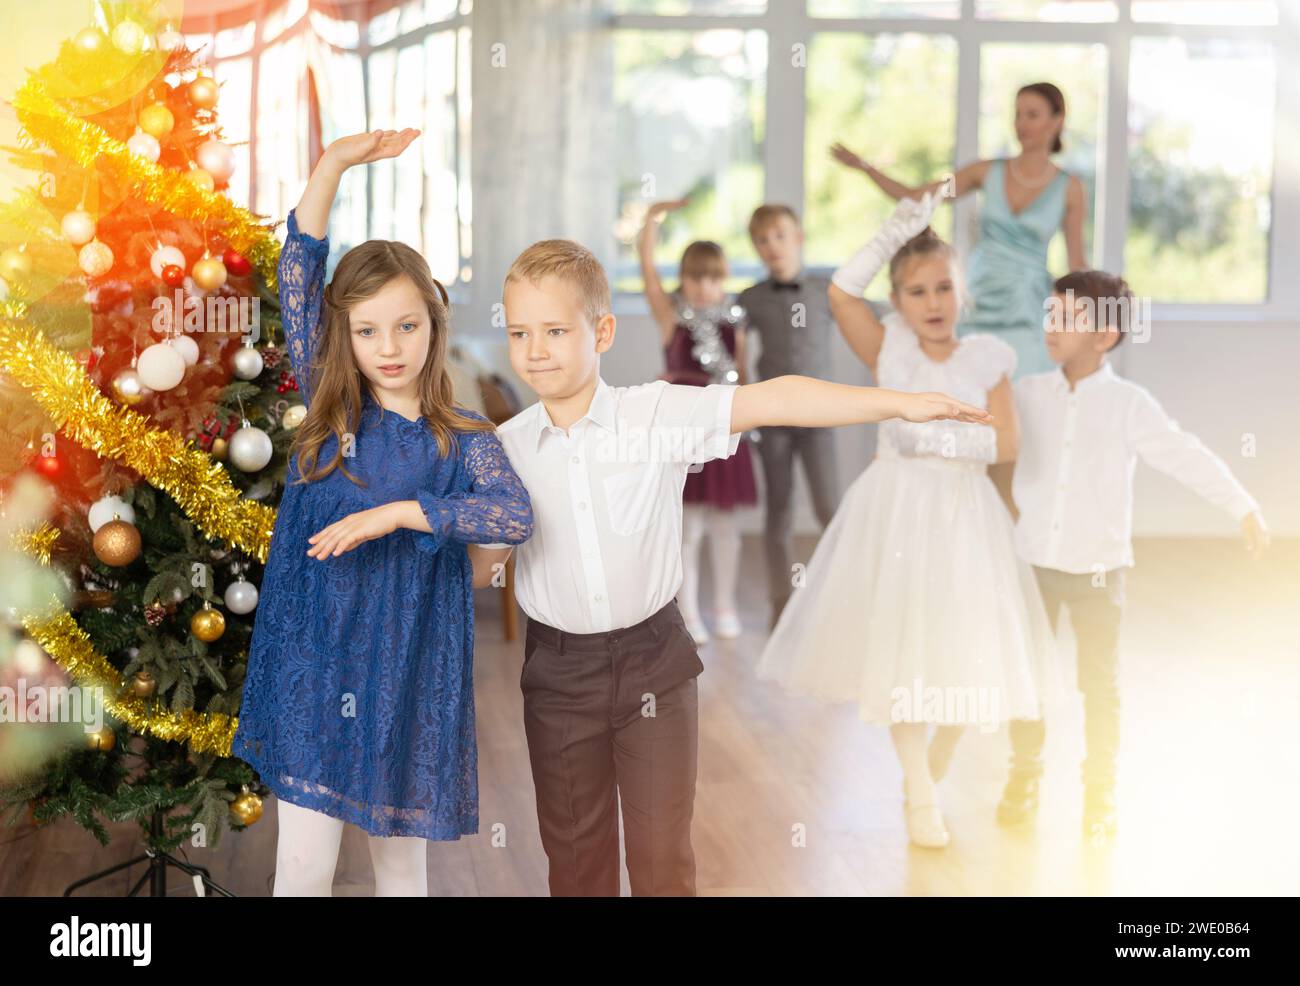 Bal de Noël - des enfants magnifiquement habillés dansent la valse viennoise près de l'arbre du nouvel an Banque D'Images